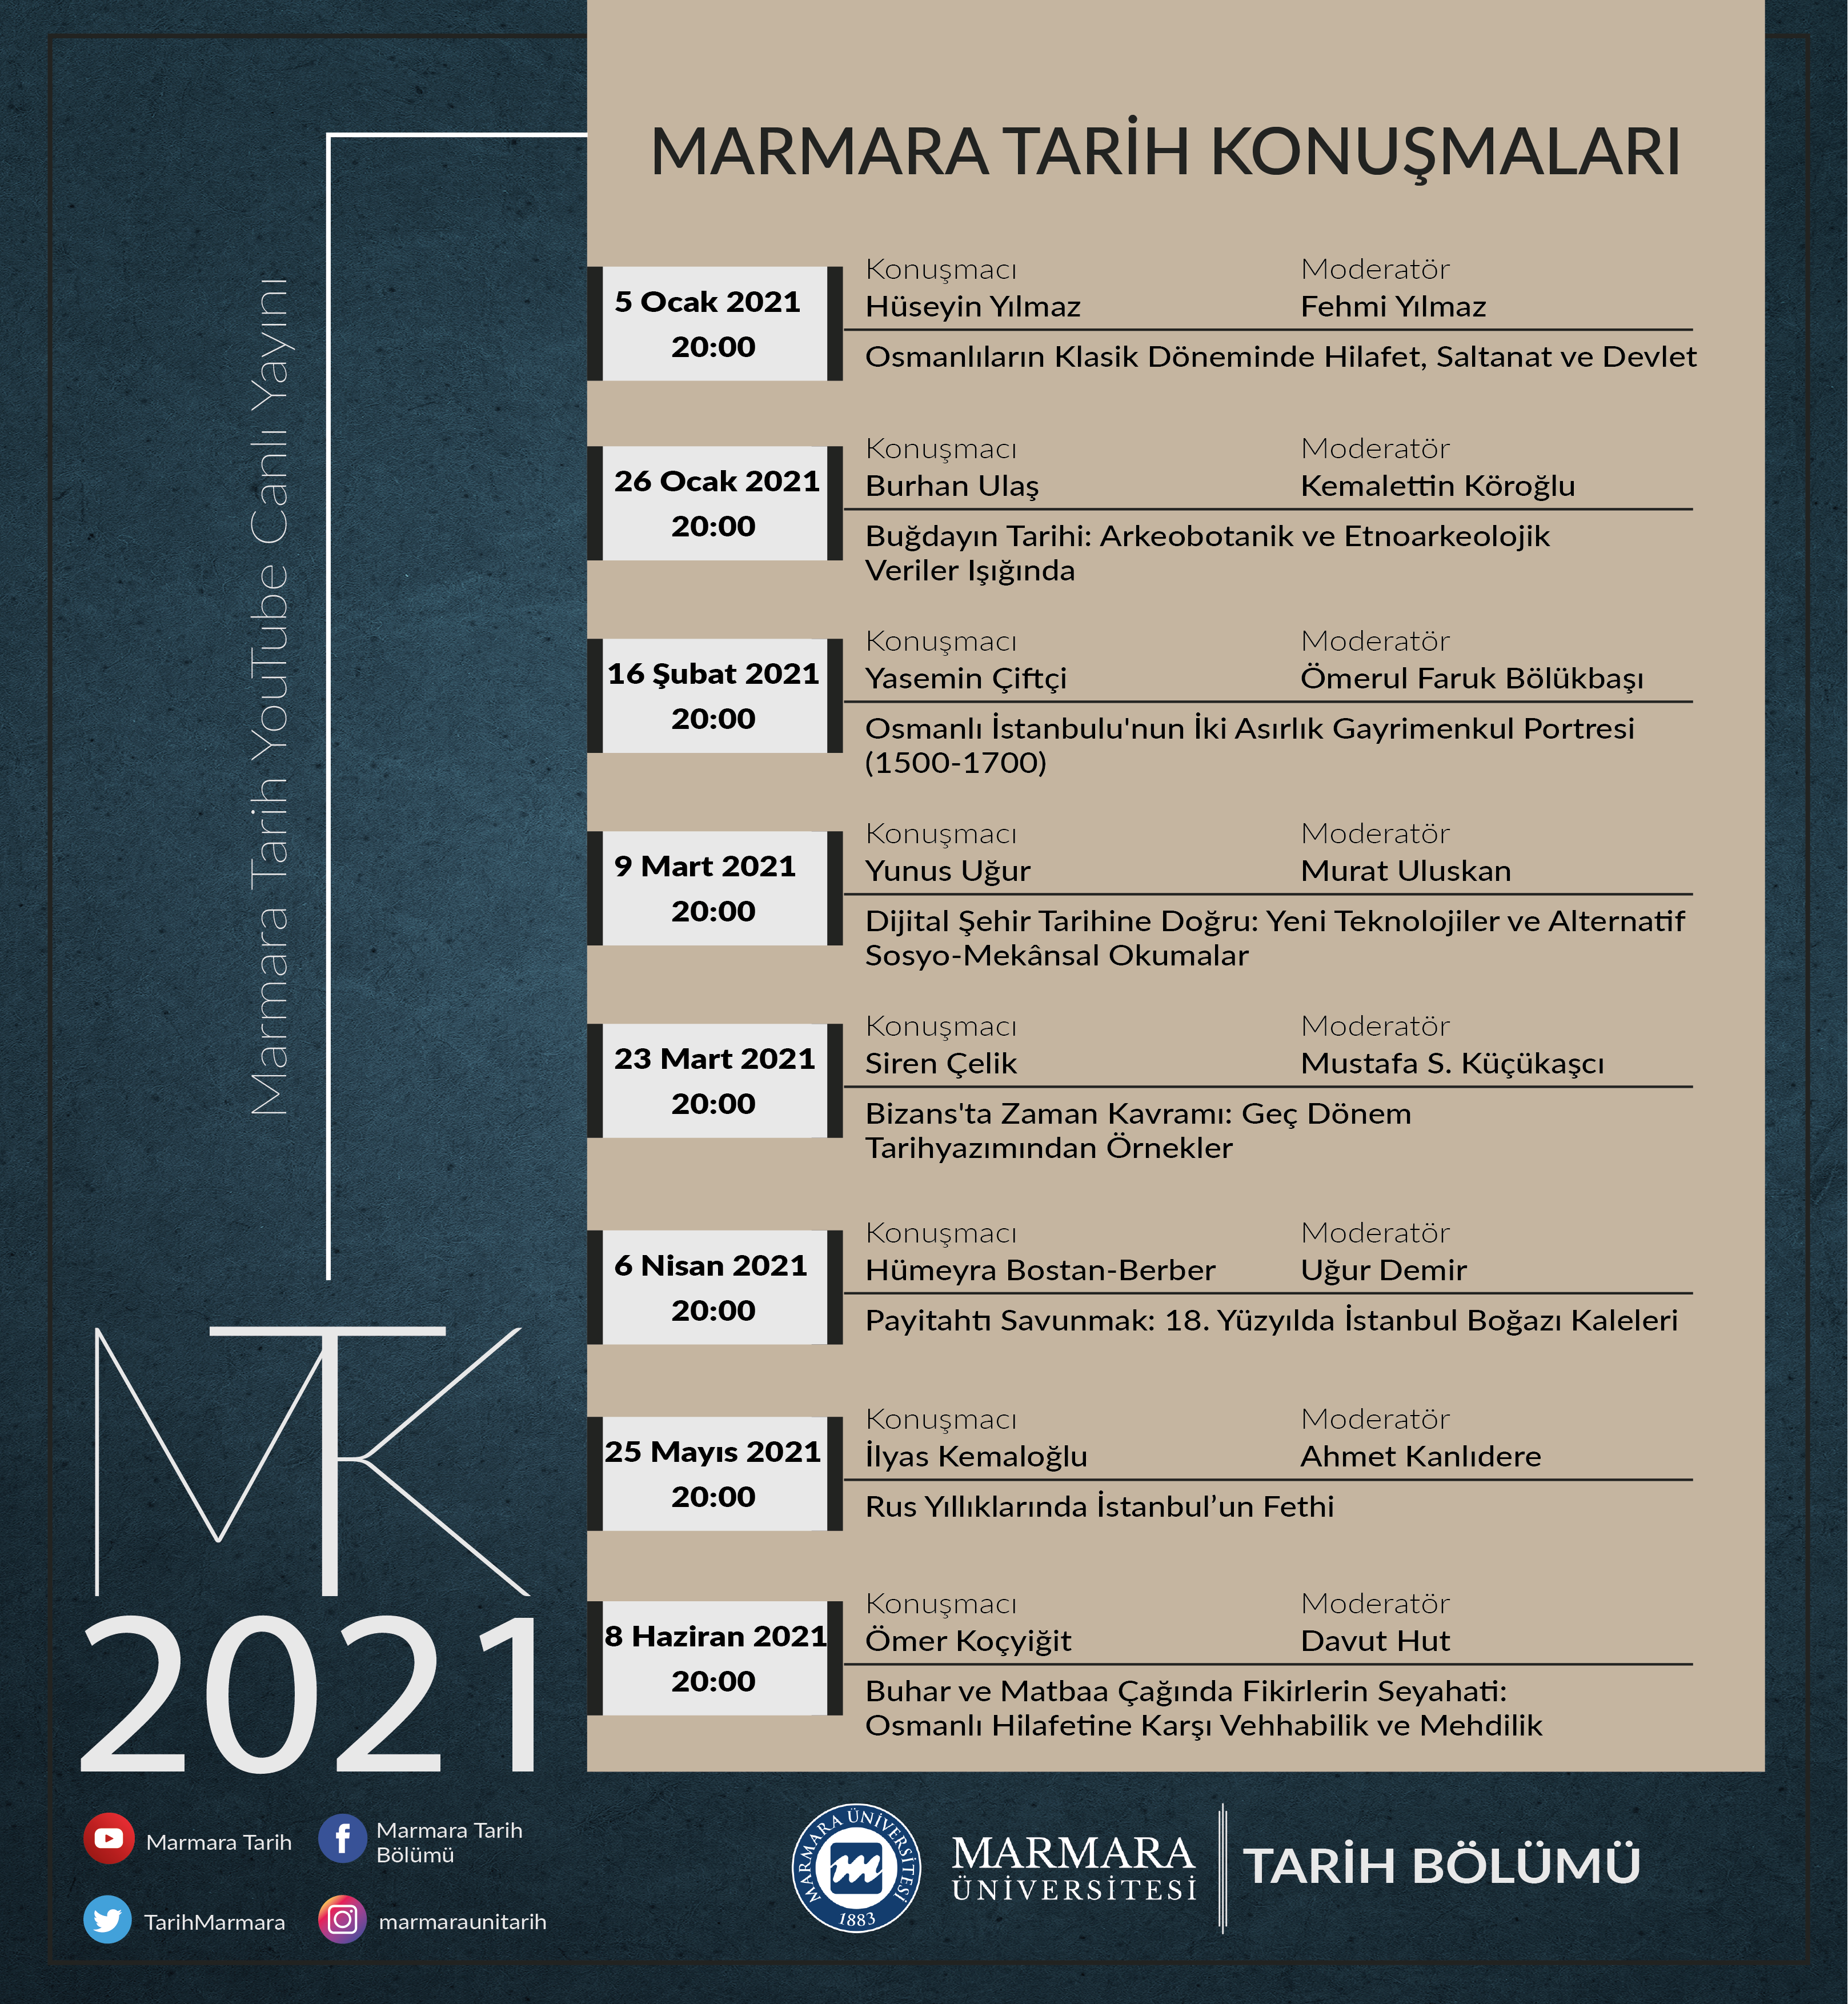 marmara-2021-afis-01.png (10.05 MB)